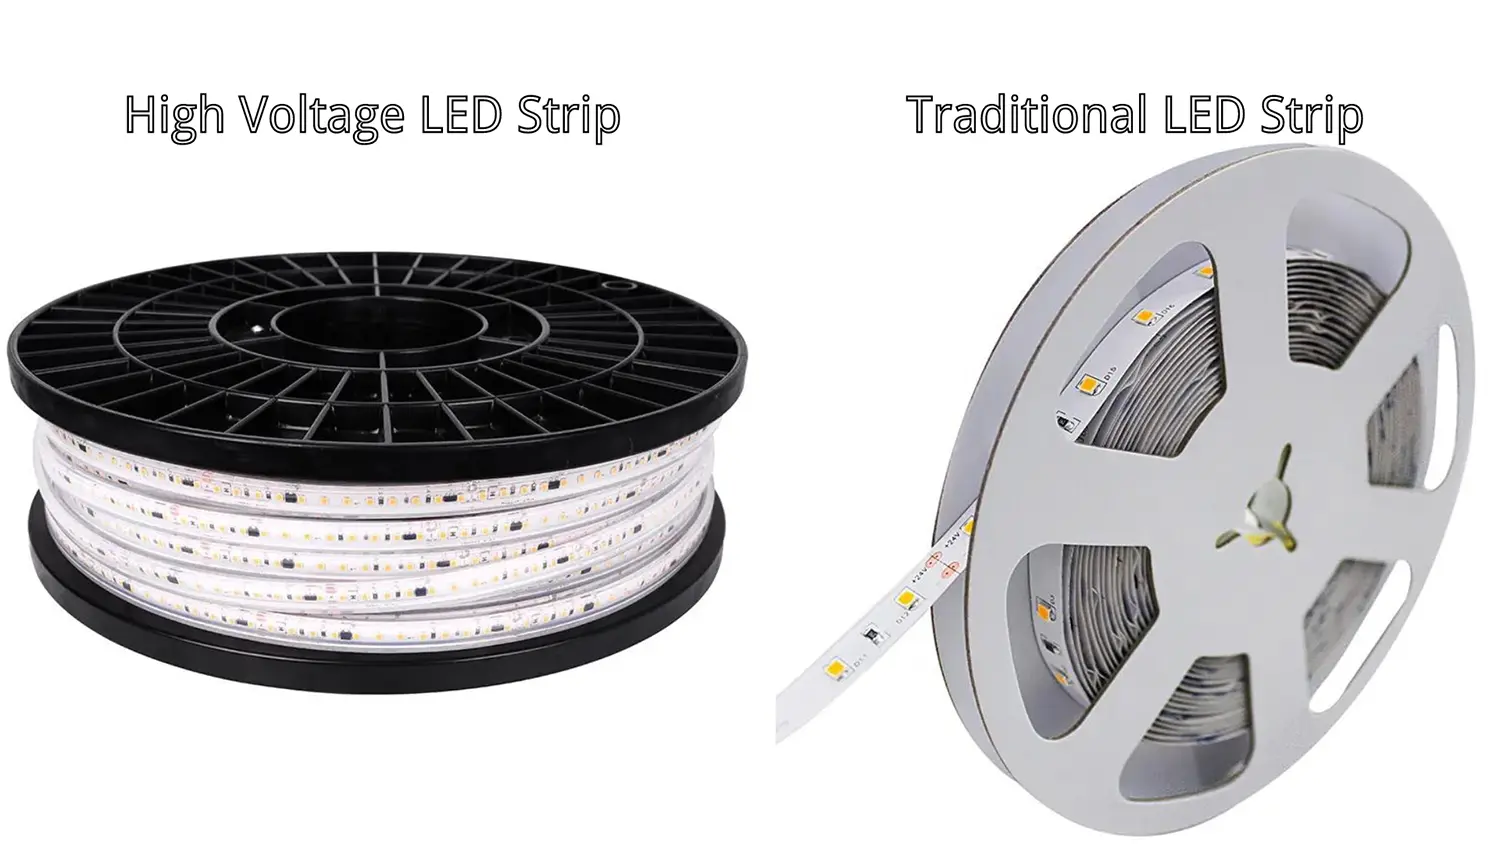 højspændings-LED-strip vs. traditionel LED-strip